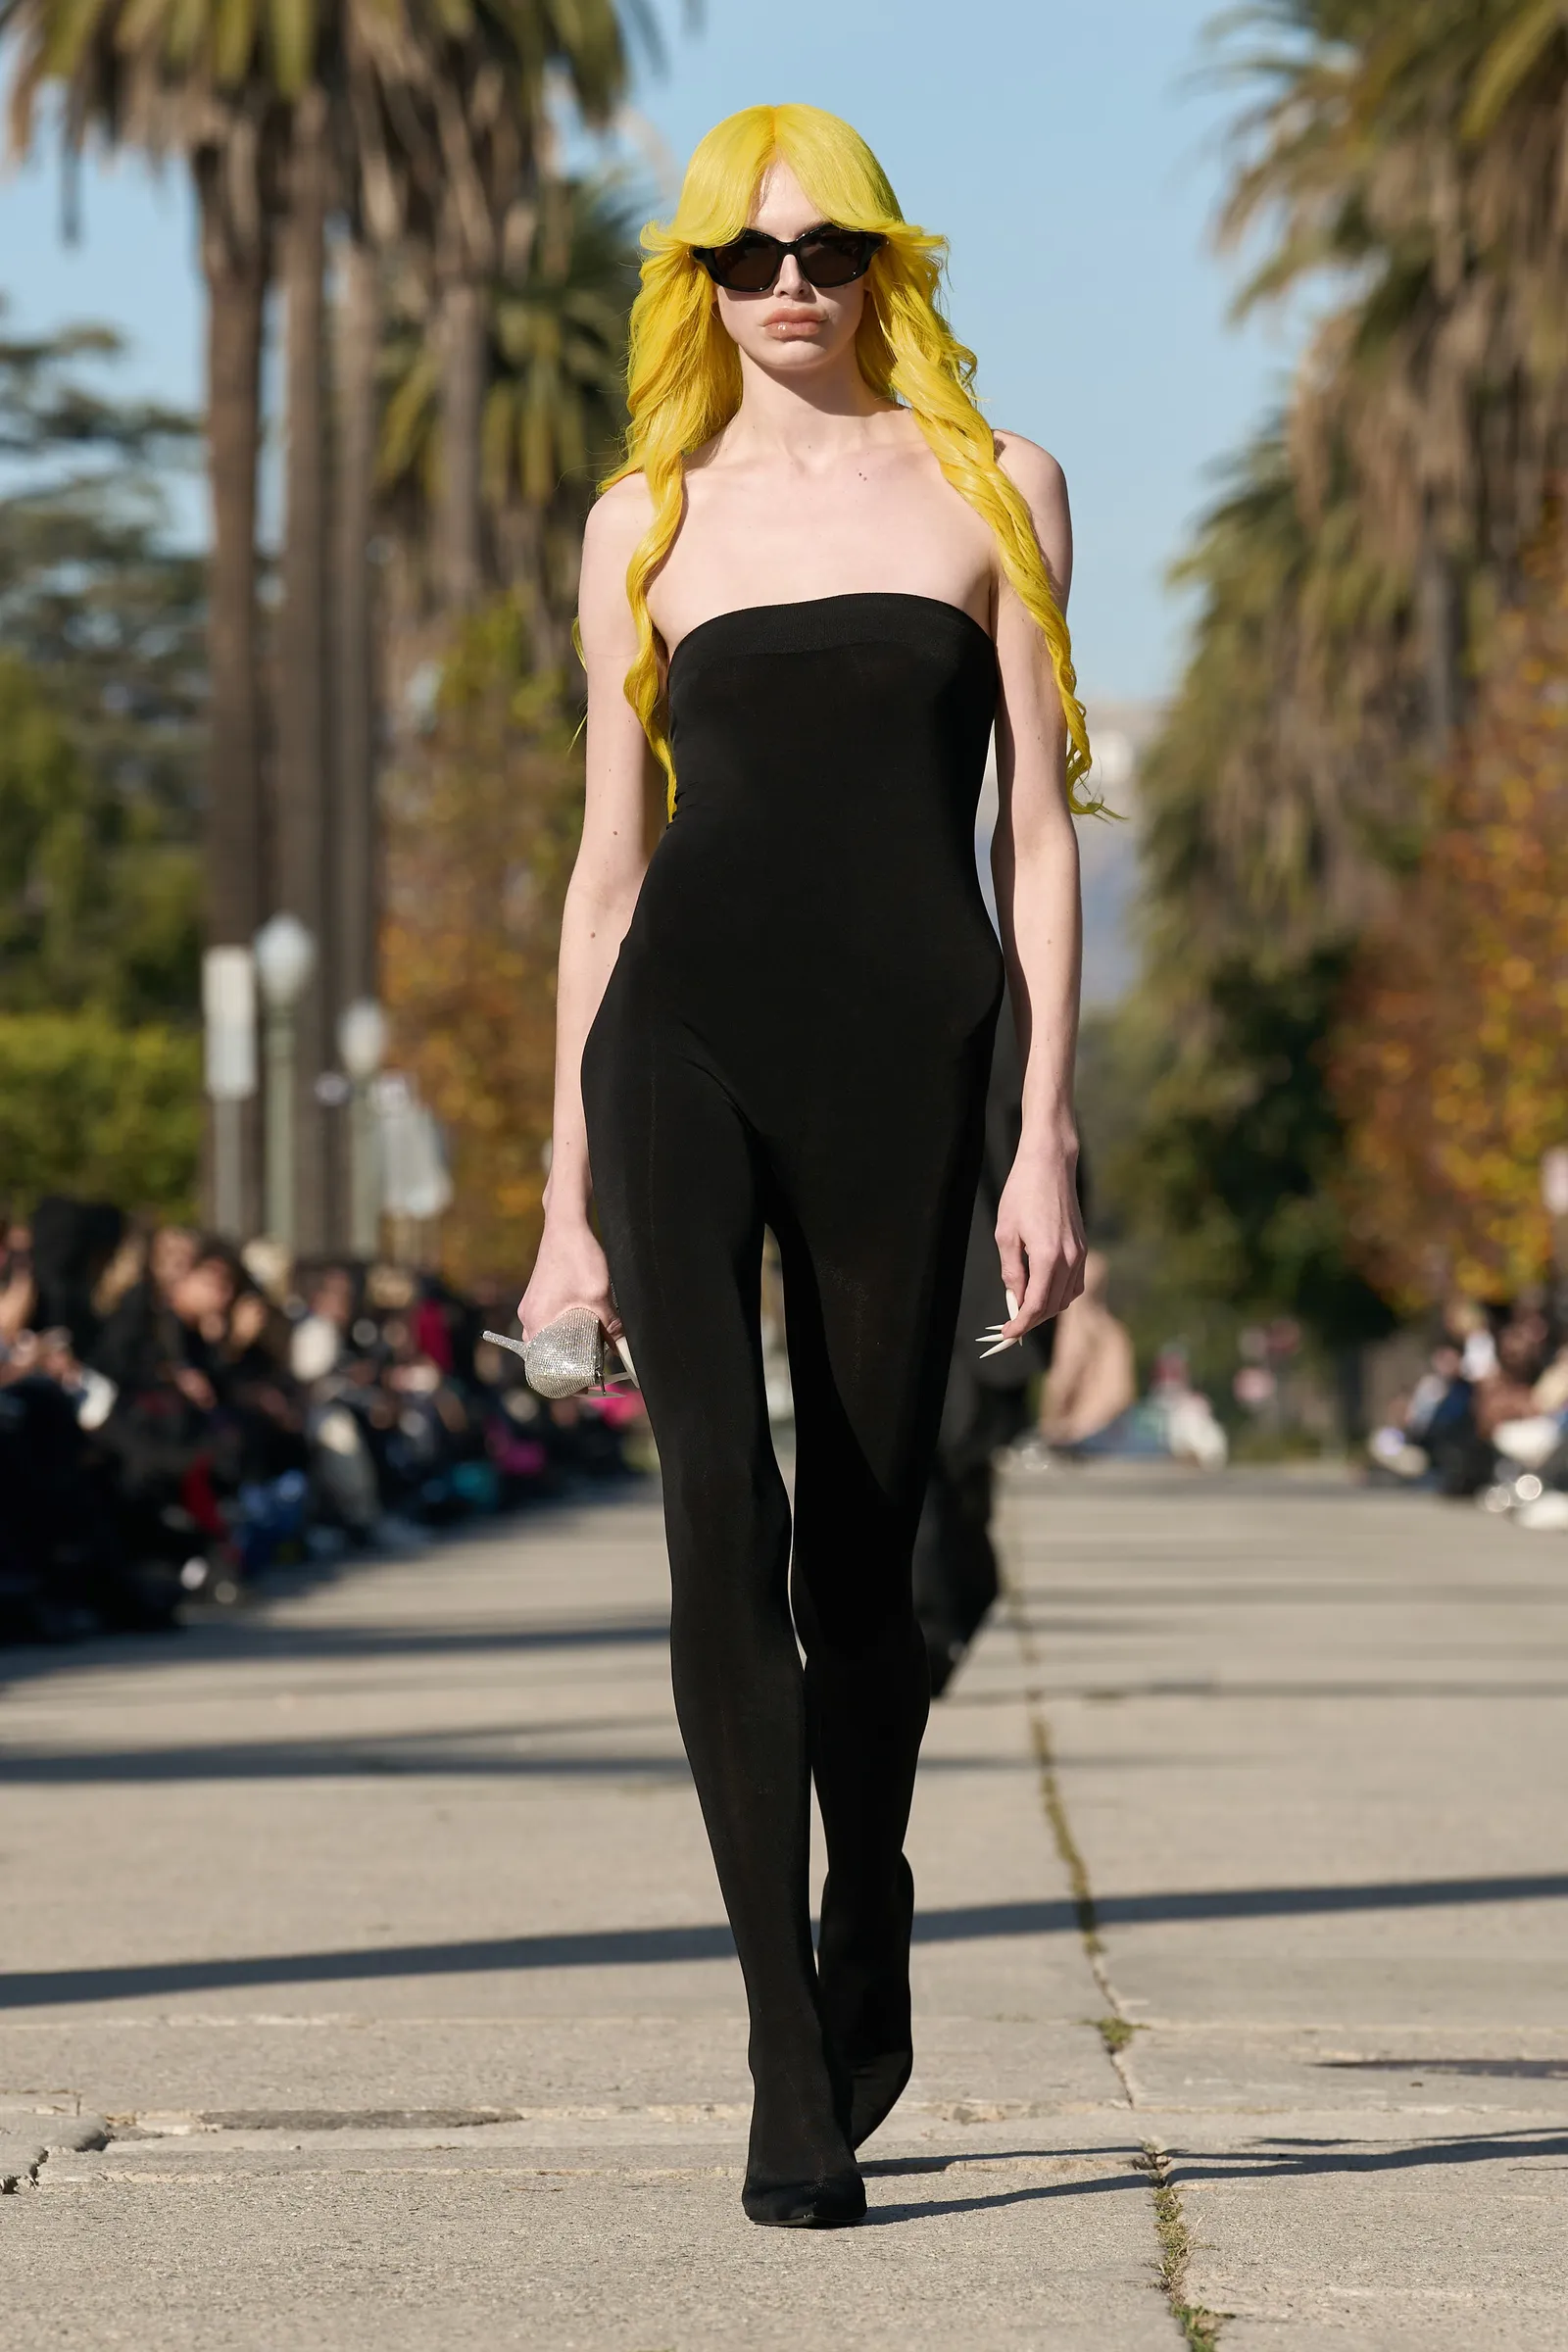 Gaya Alex Consani saat Catwalk, Model Pendatang Baru yang Viral